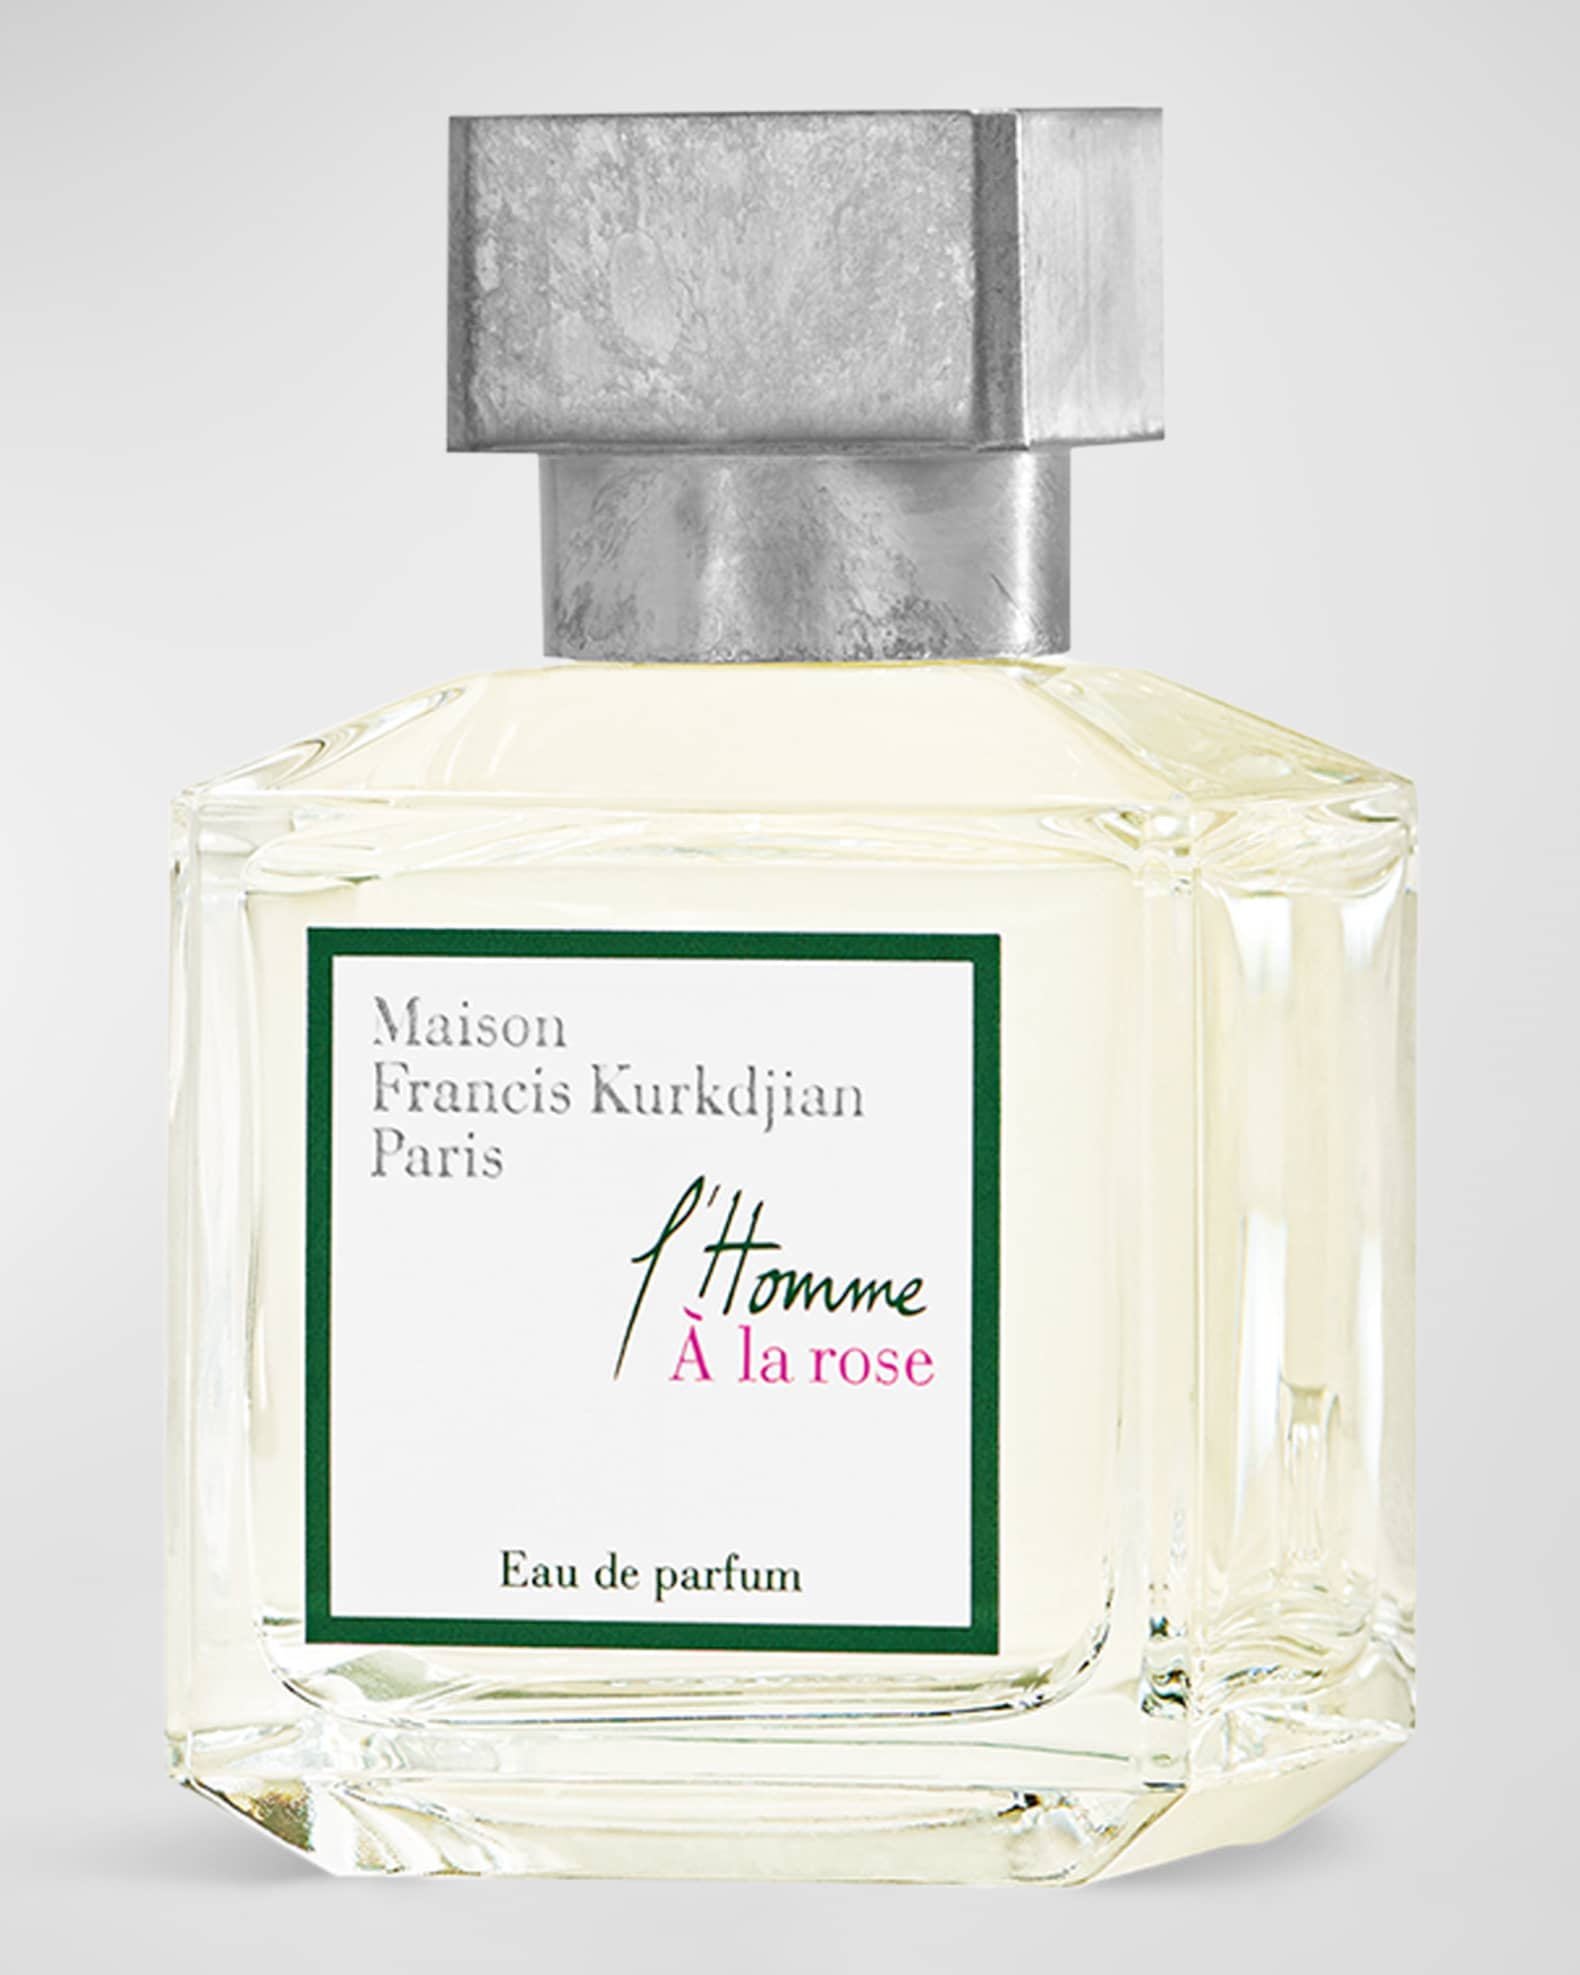 Francis Kurkdjian - All Perfumes and Facts